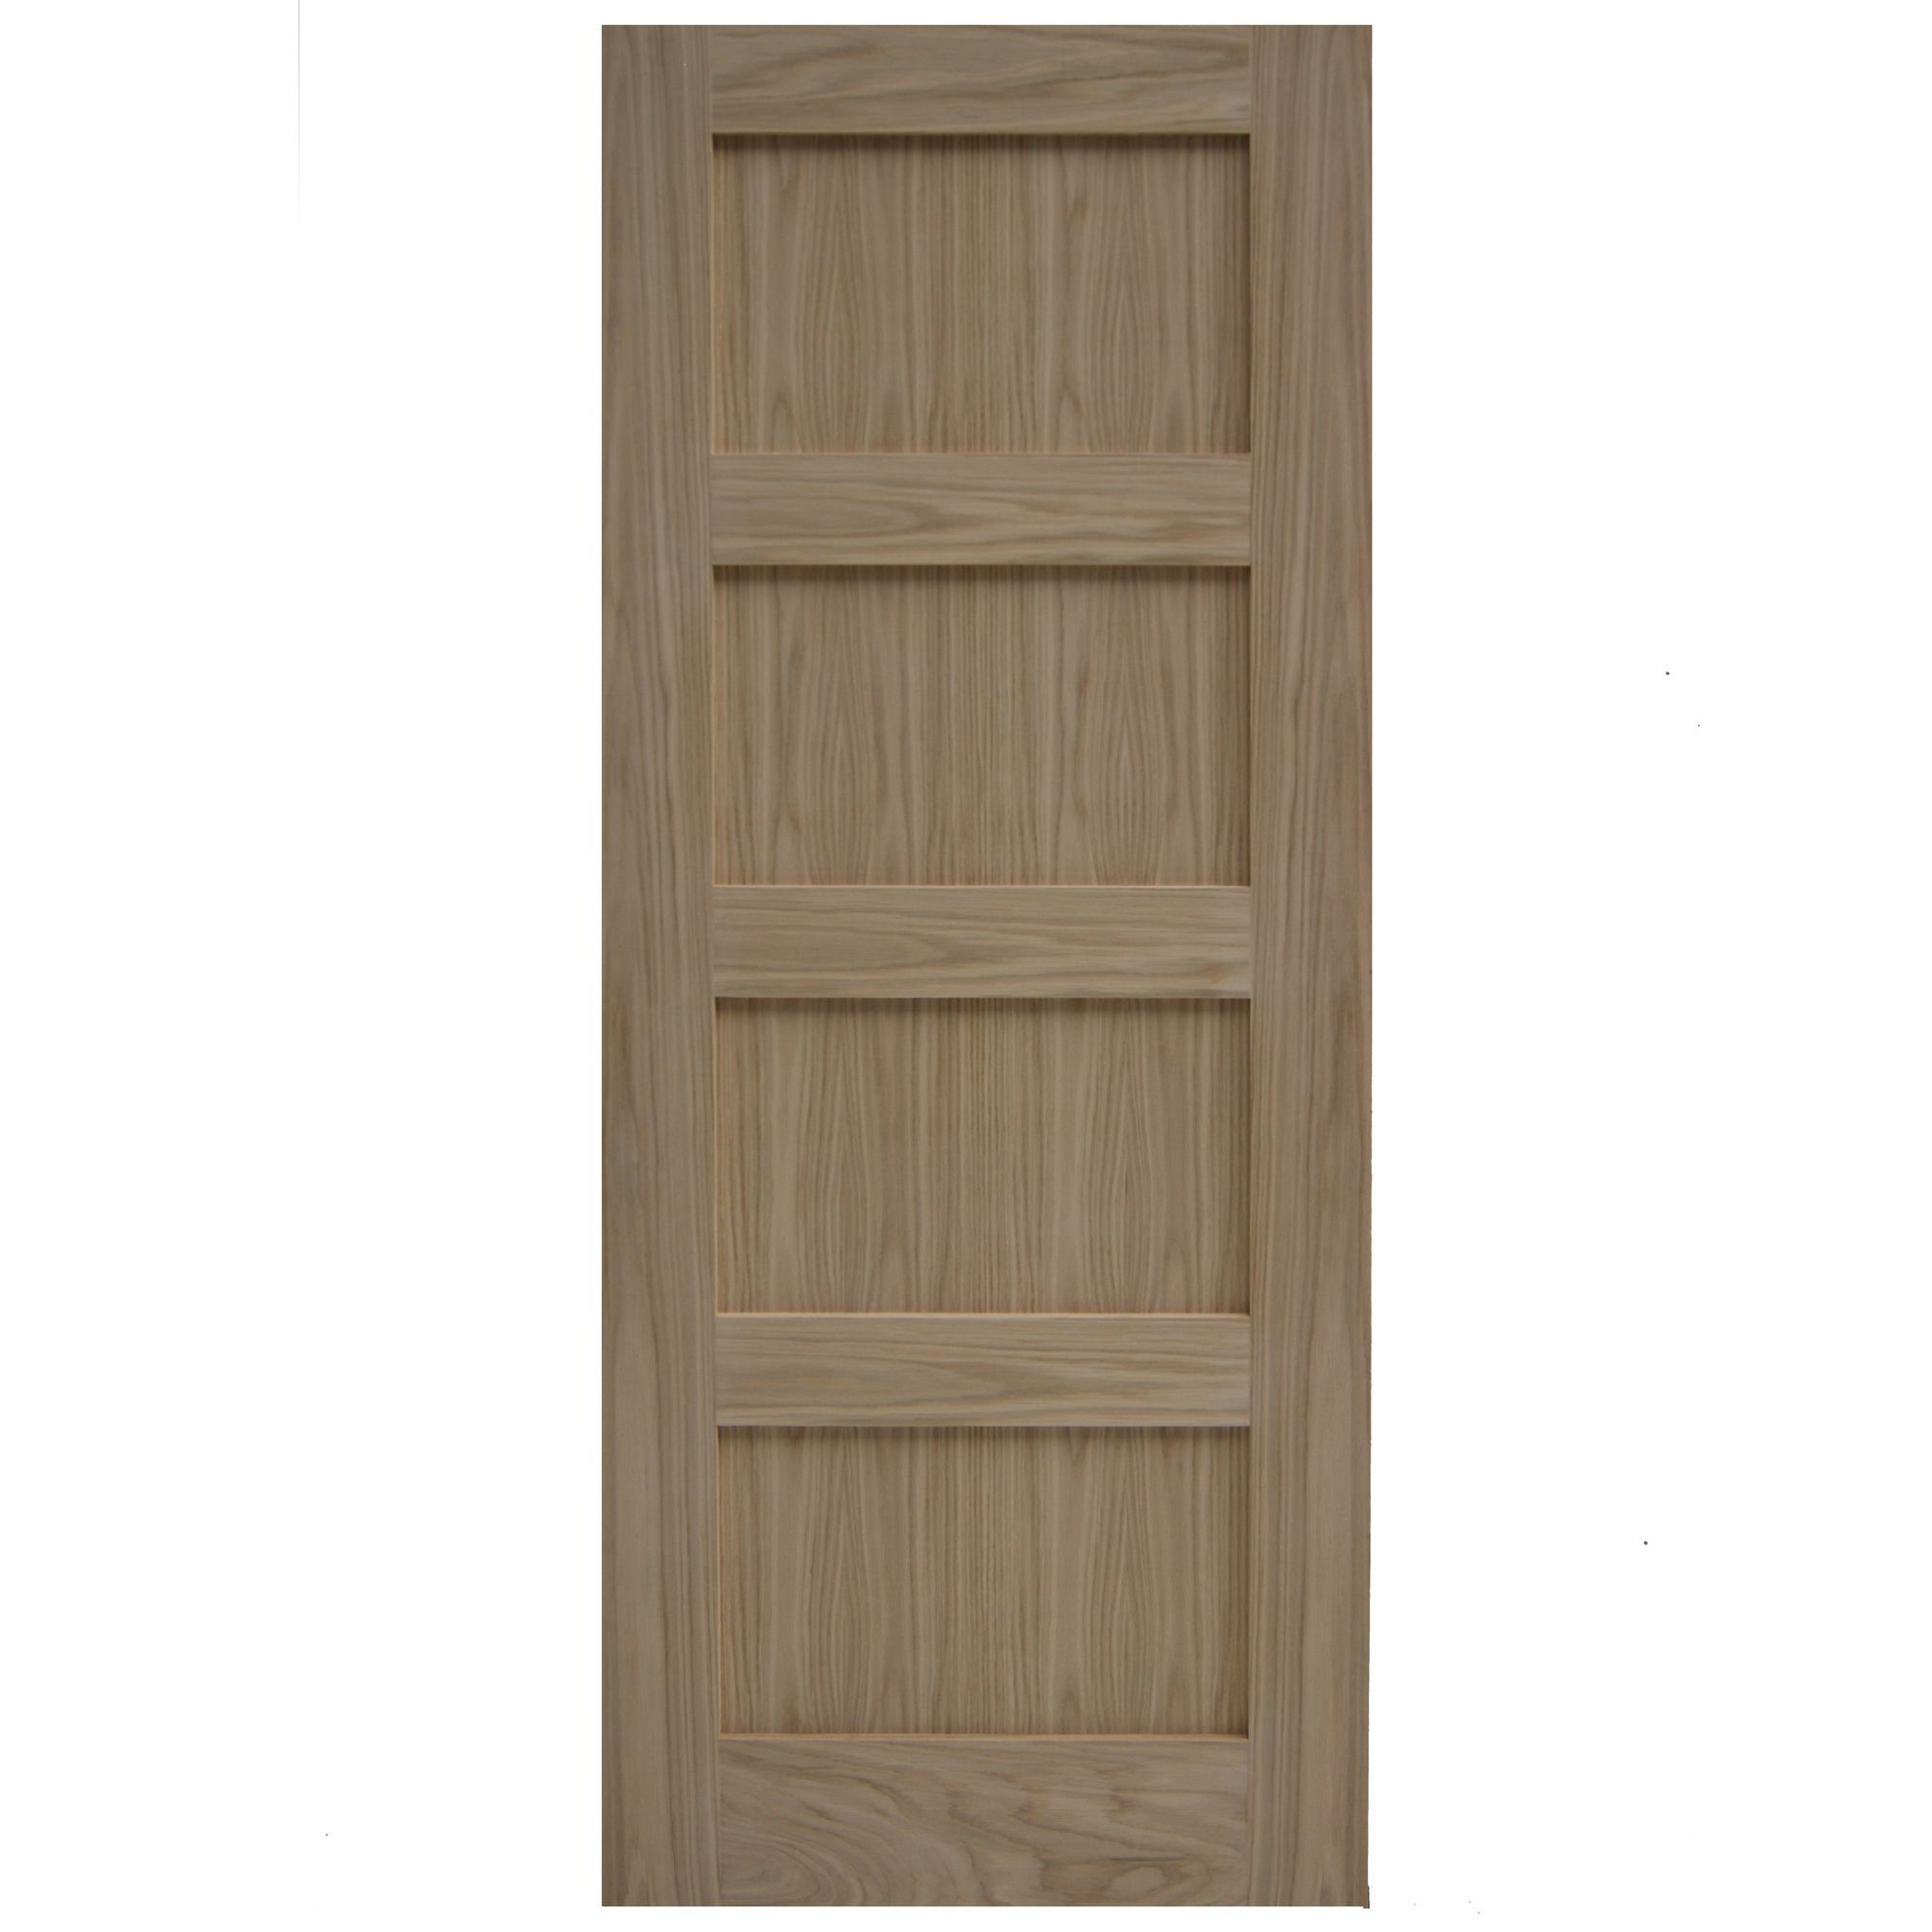 Panel shaker oak veneer internal door